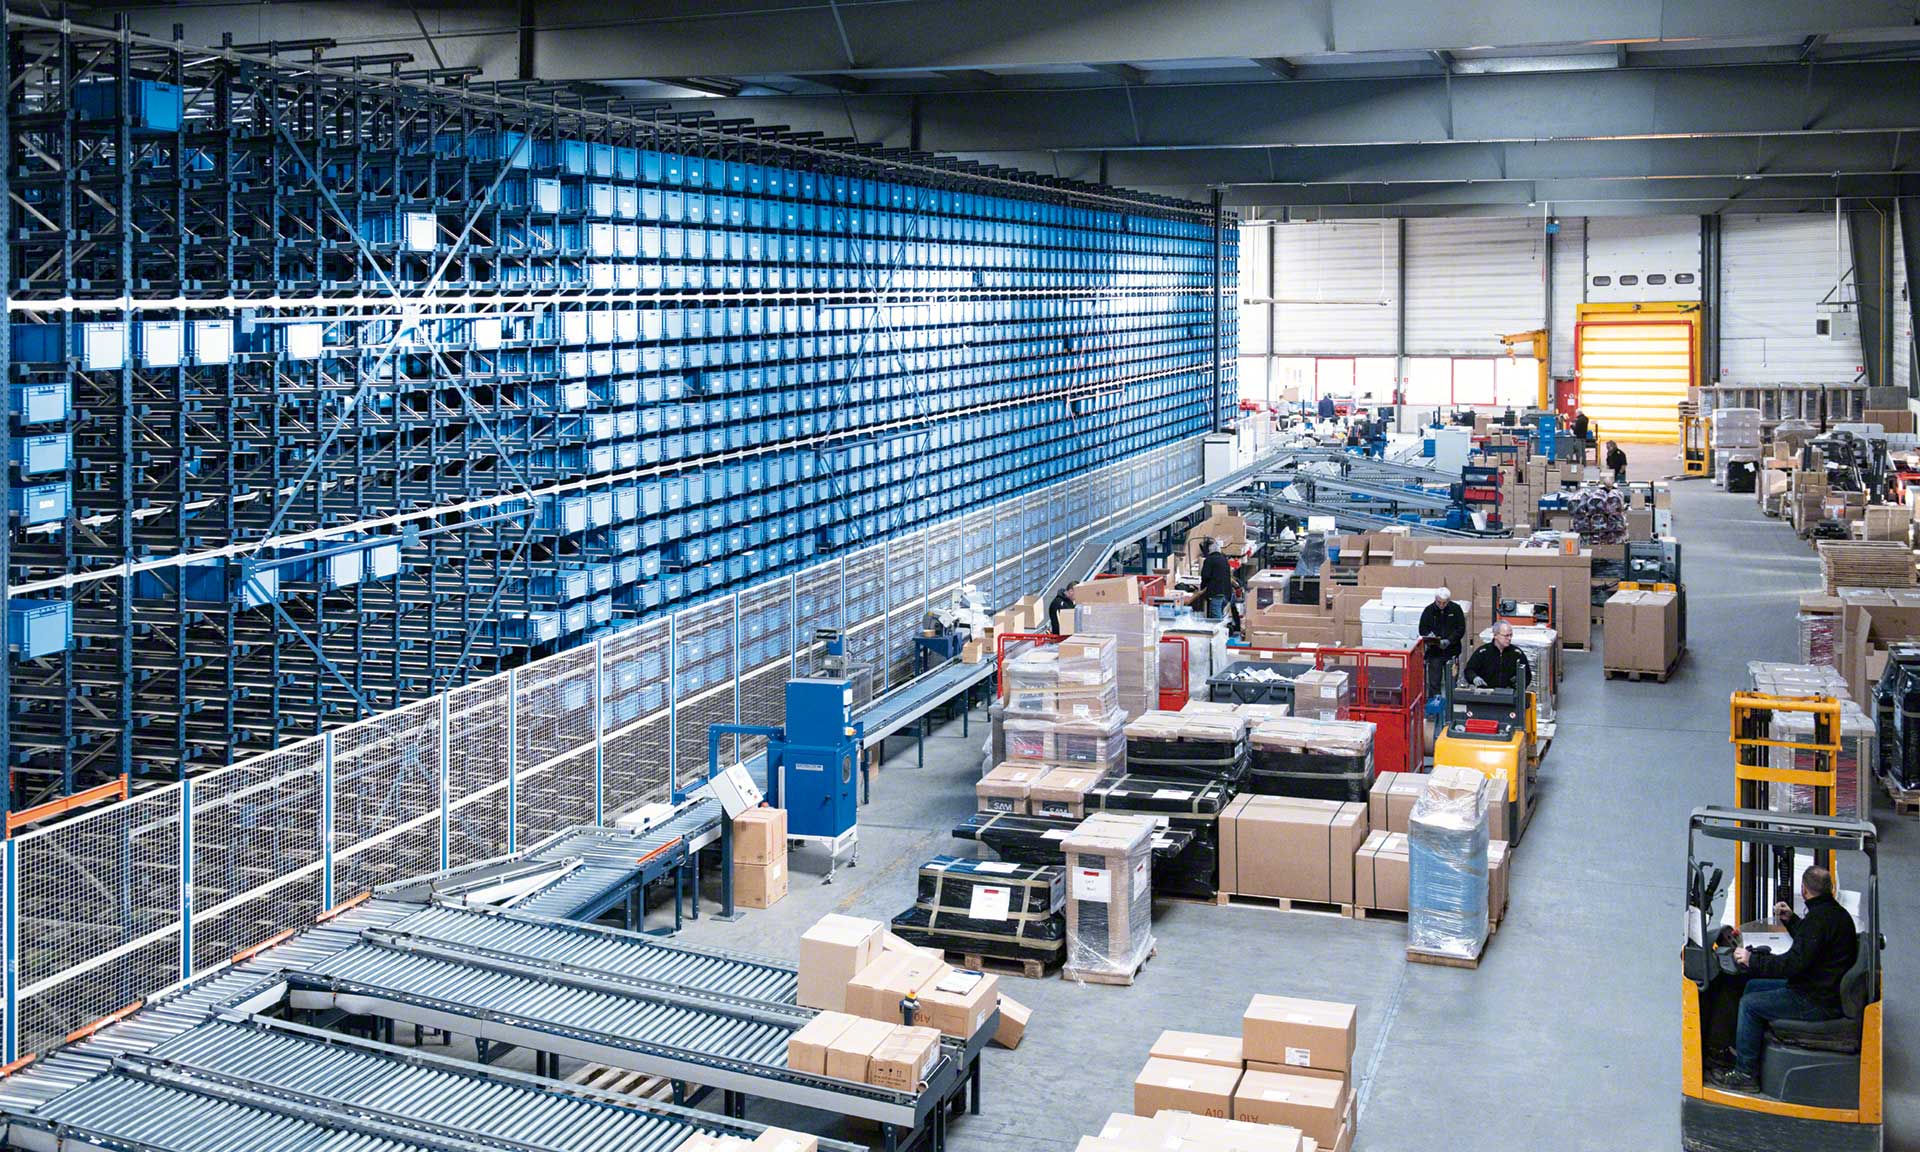 Urban warehouses zijn logistieke magazijnen in de buurt van stadscentra om de bezorging van bestellingen te versnellen